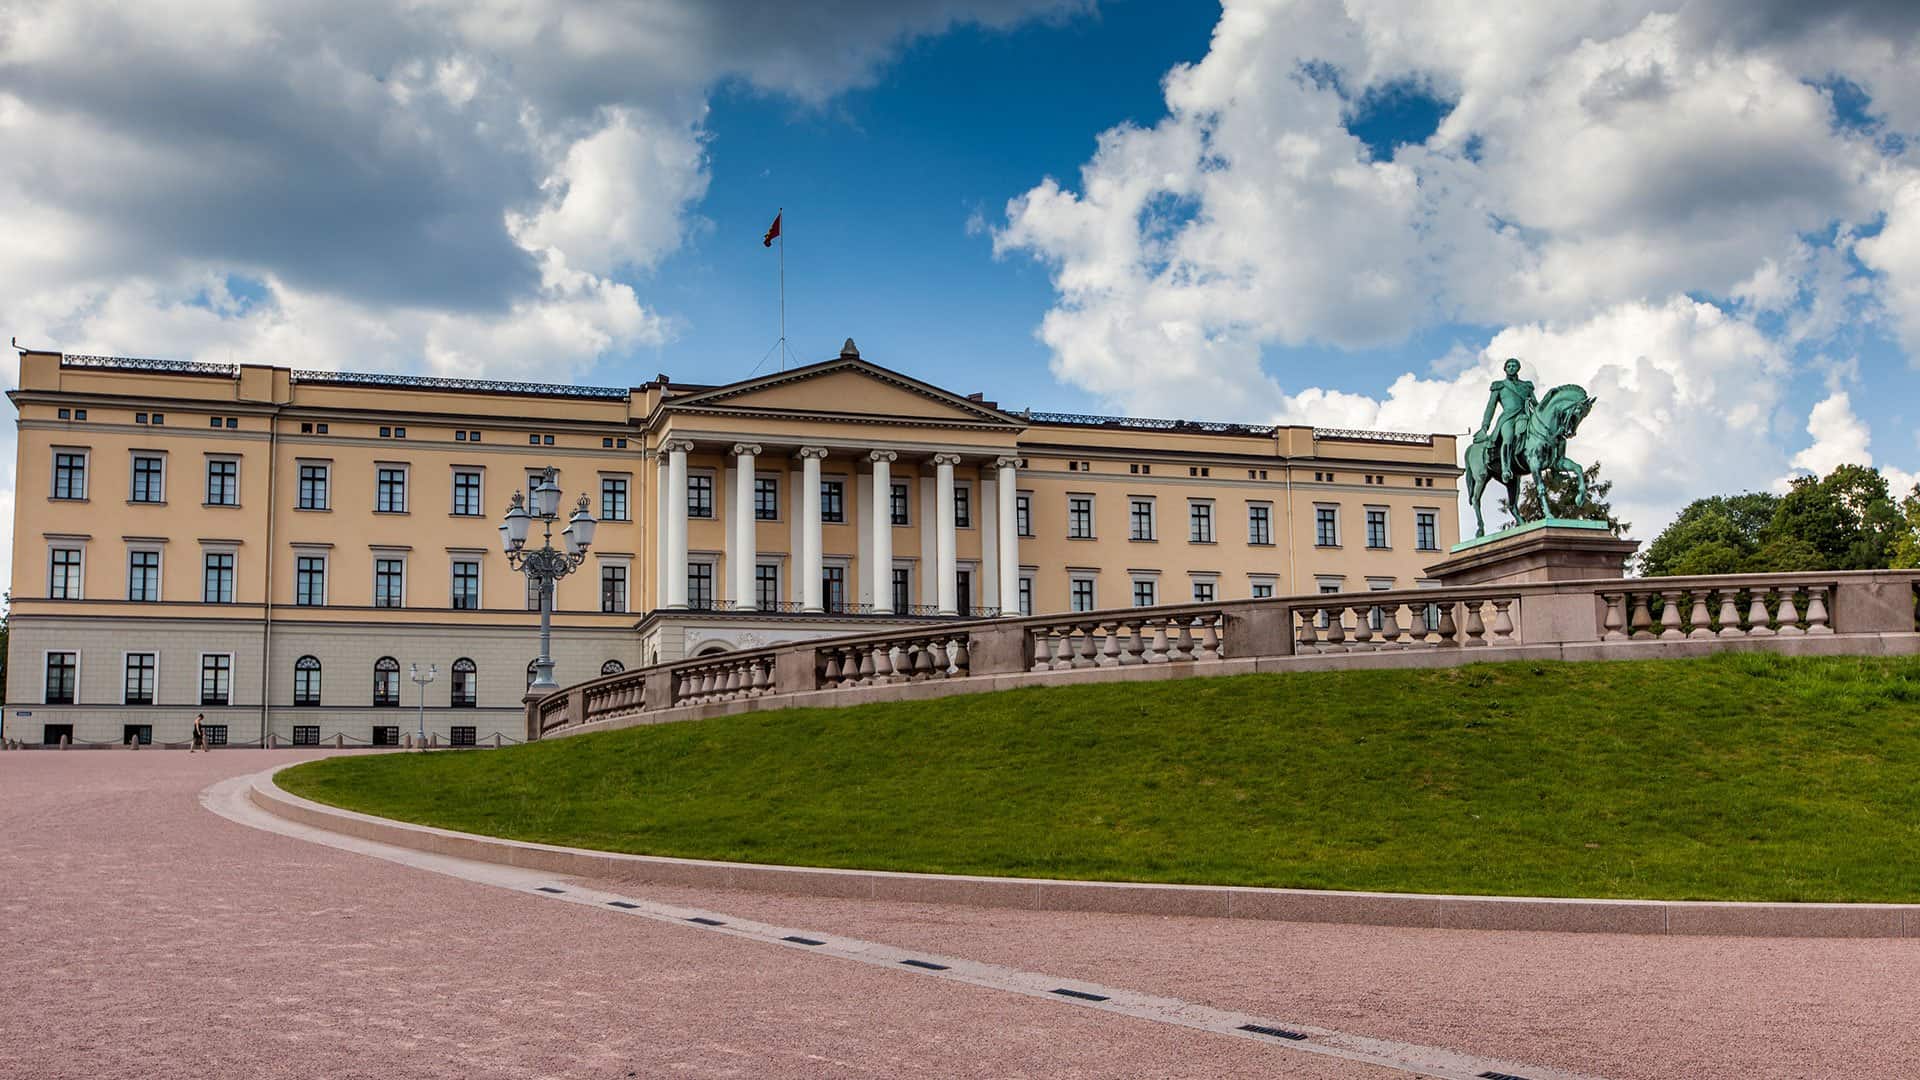 افضل 6 انشطة في القصر الملكي اوسلو النرويج